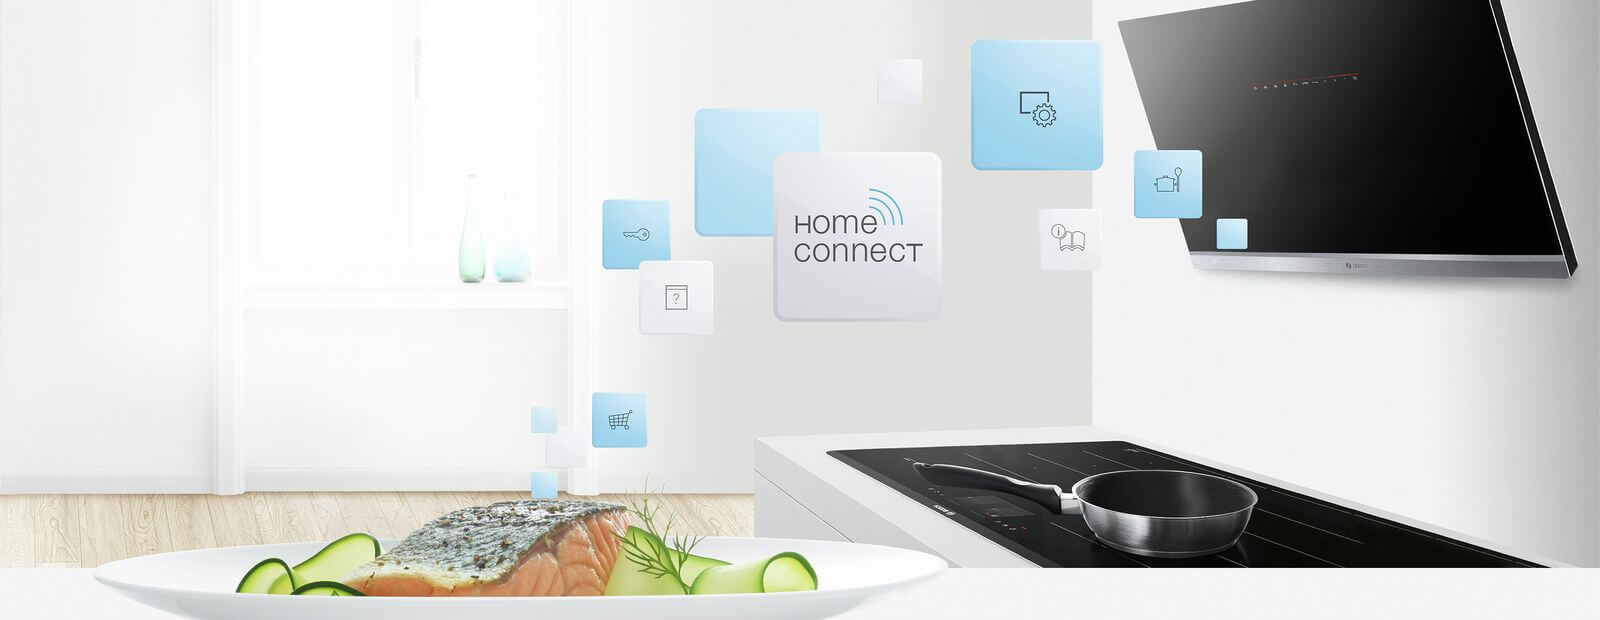 Cách sử dụng chức năng Home Connect trên các thiết bị bếp Bosch